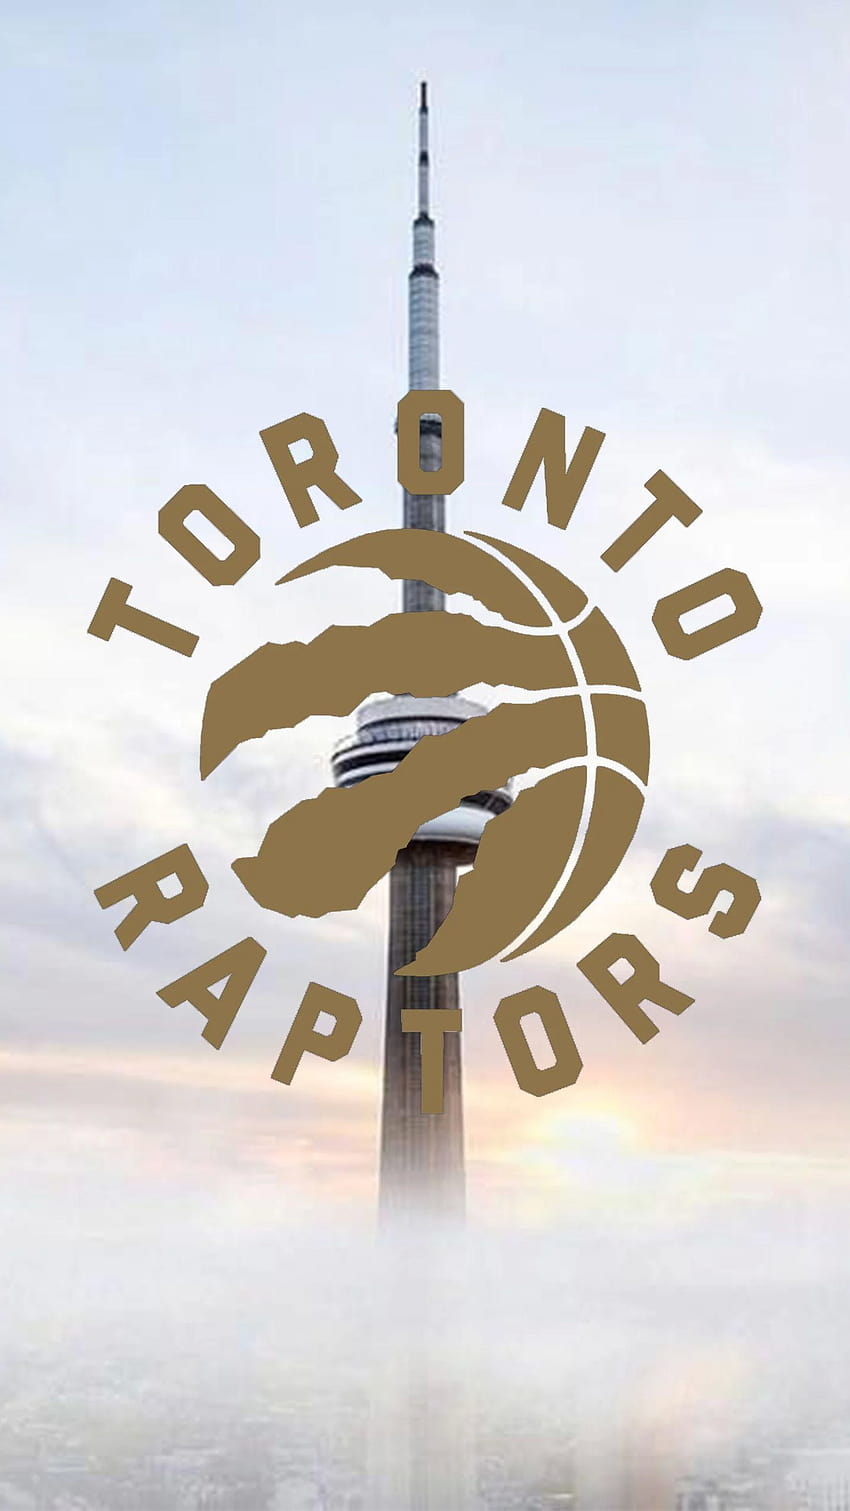 Membuat Beberapa Telepon Toronto Raptors, toronto raptors 2018 wallpaper ponsel HD